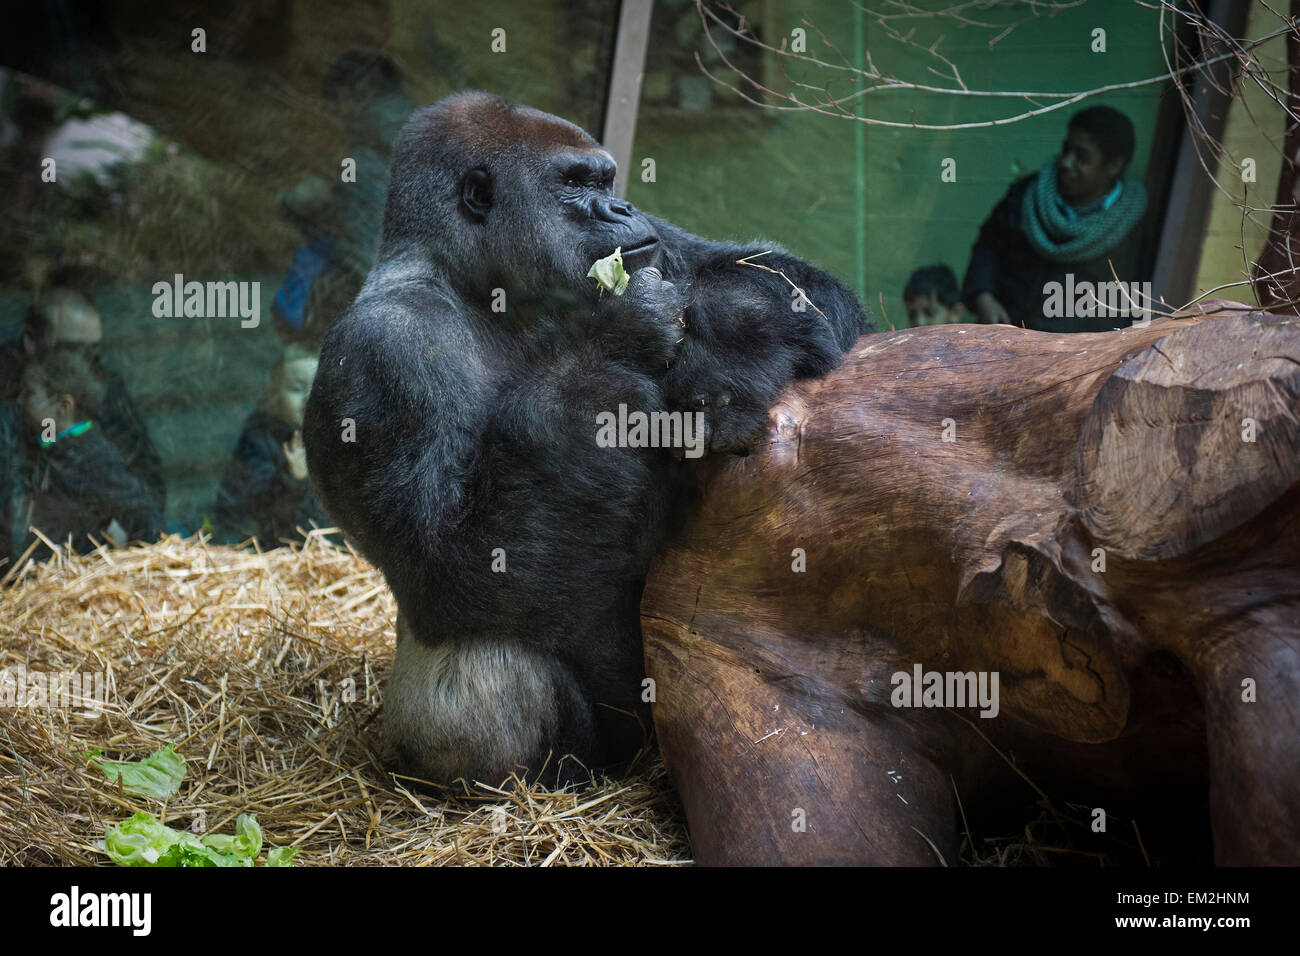 (Gorilla gorilla), homme, dans l'enclos derrière le verre, le Jardin zoologique de Zurich, Zürich, Suisse Banque D'Images